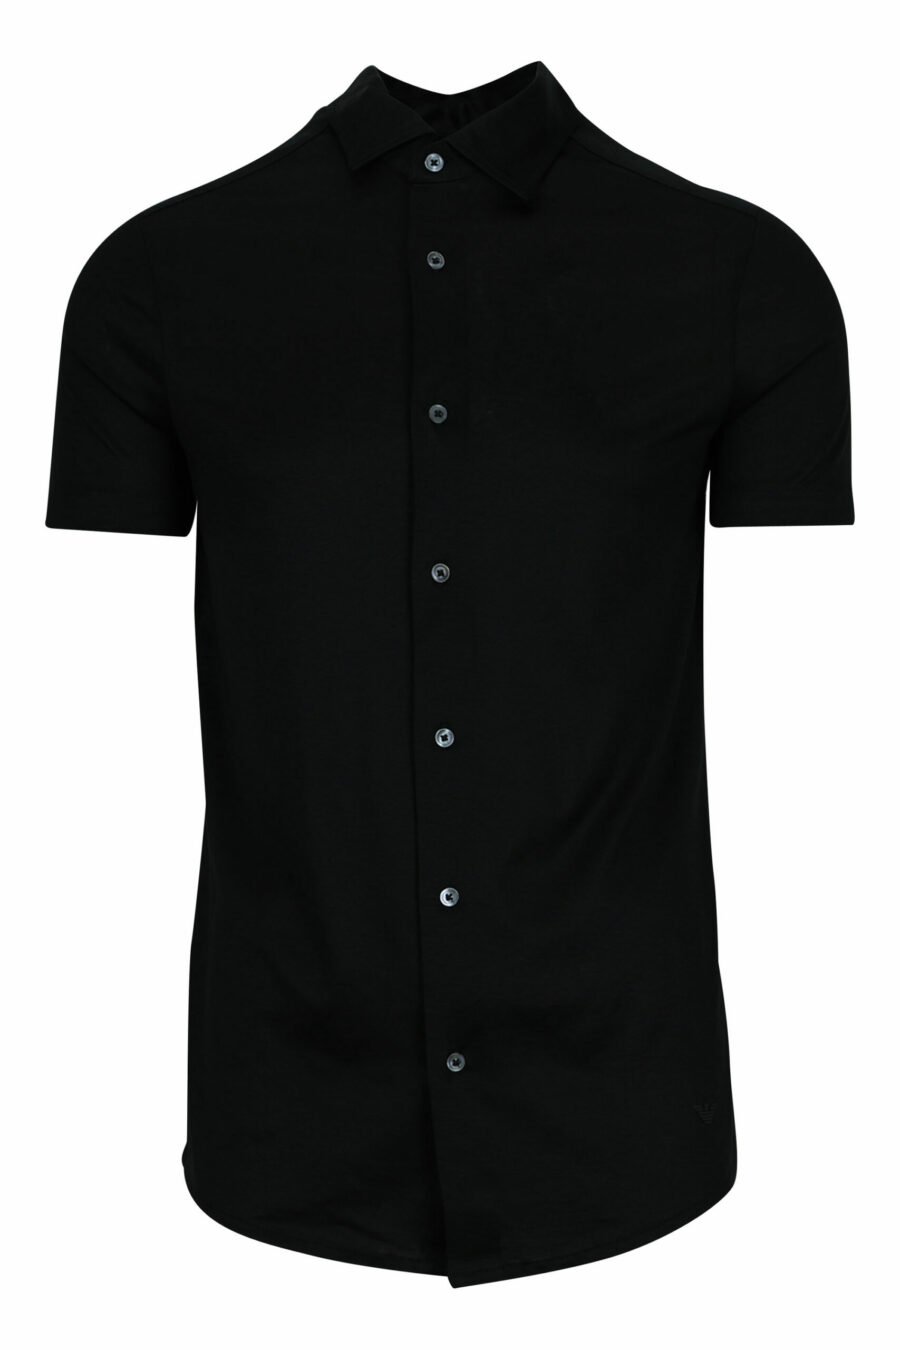 Camisa preta de manga curta com o mini logótipo da águia - 8056861420206 scaled